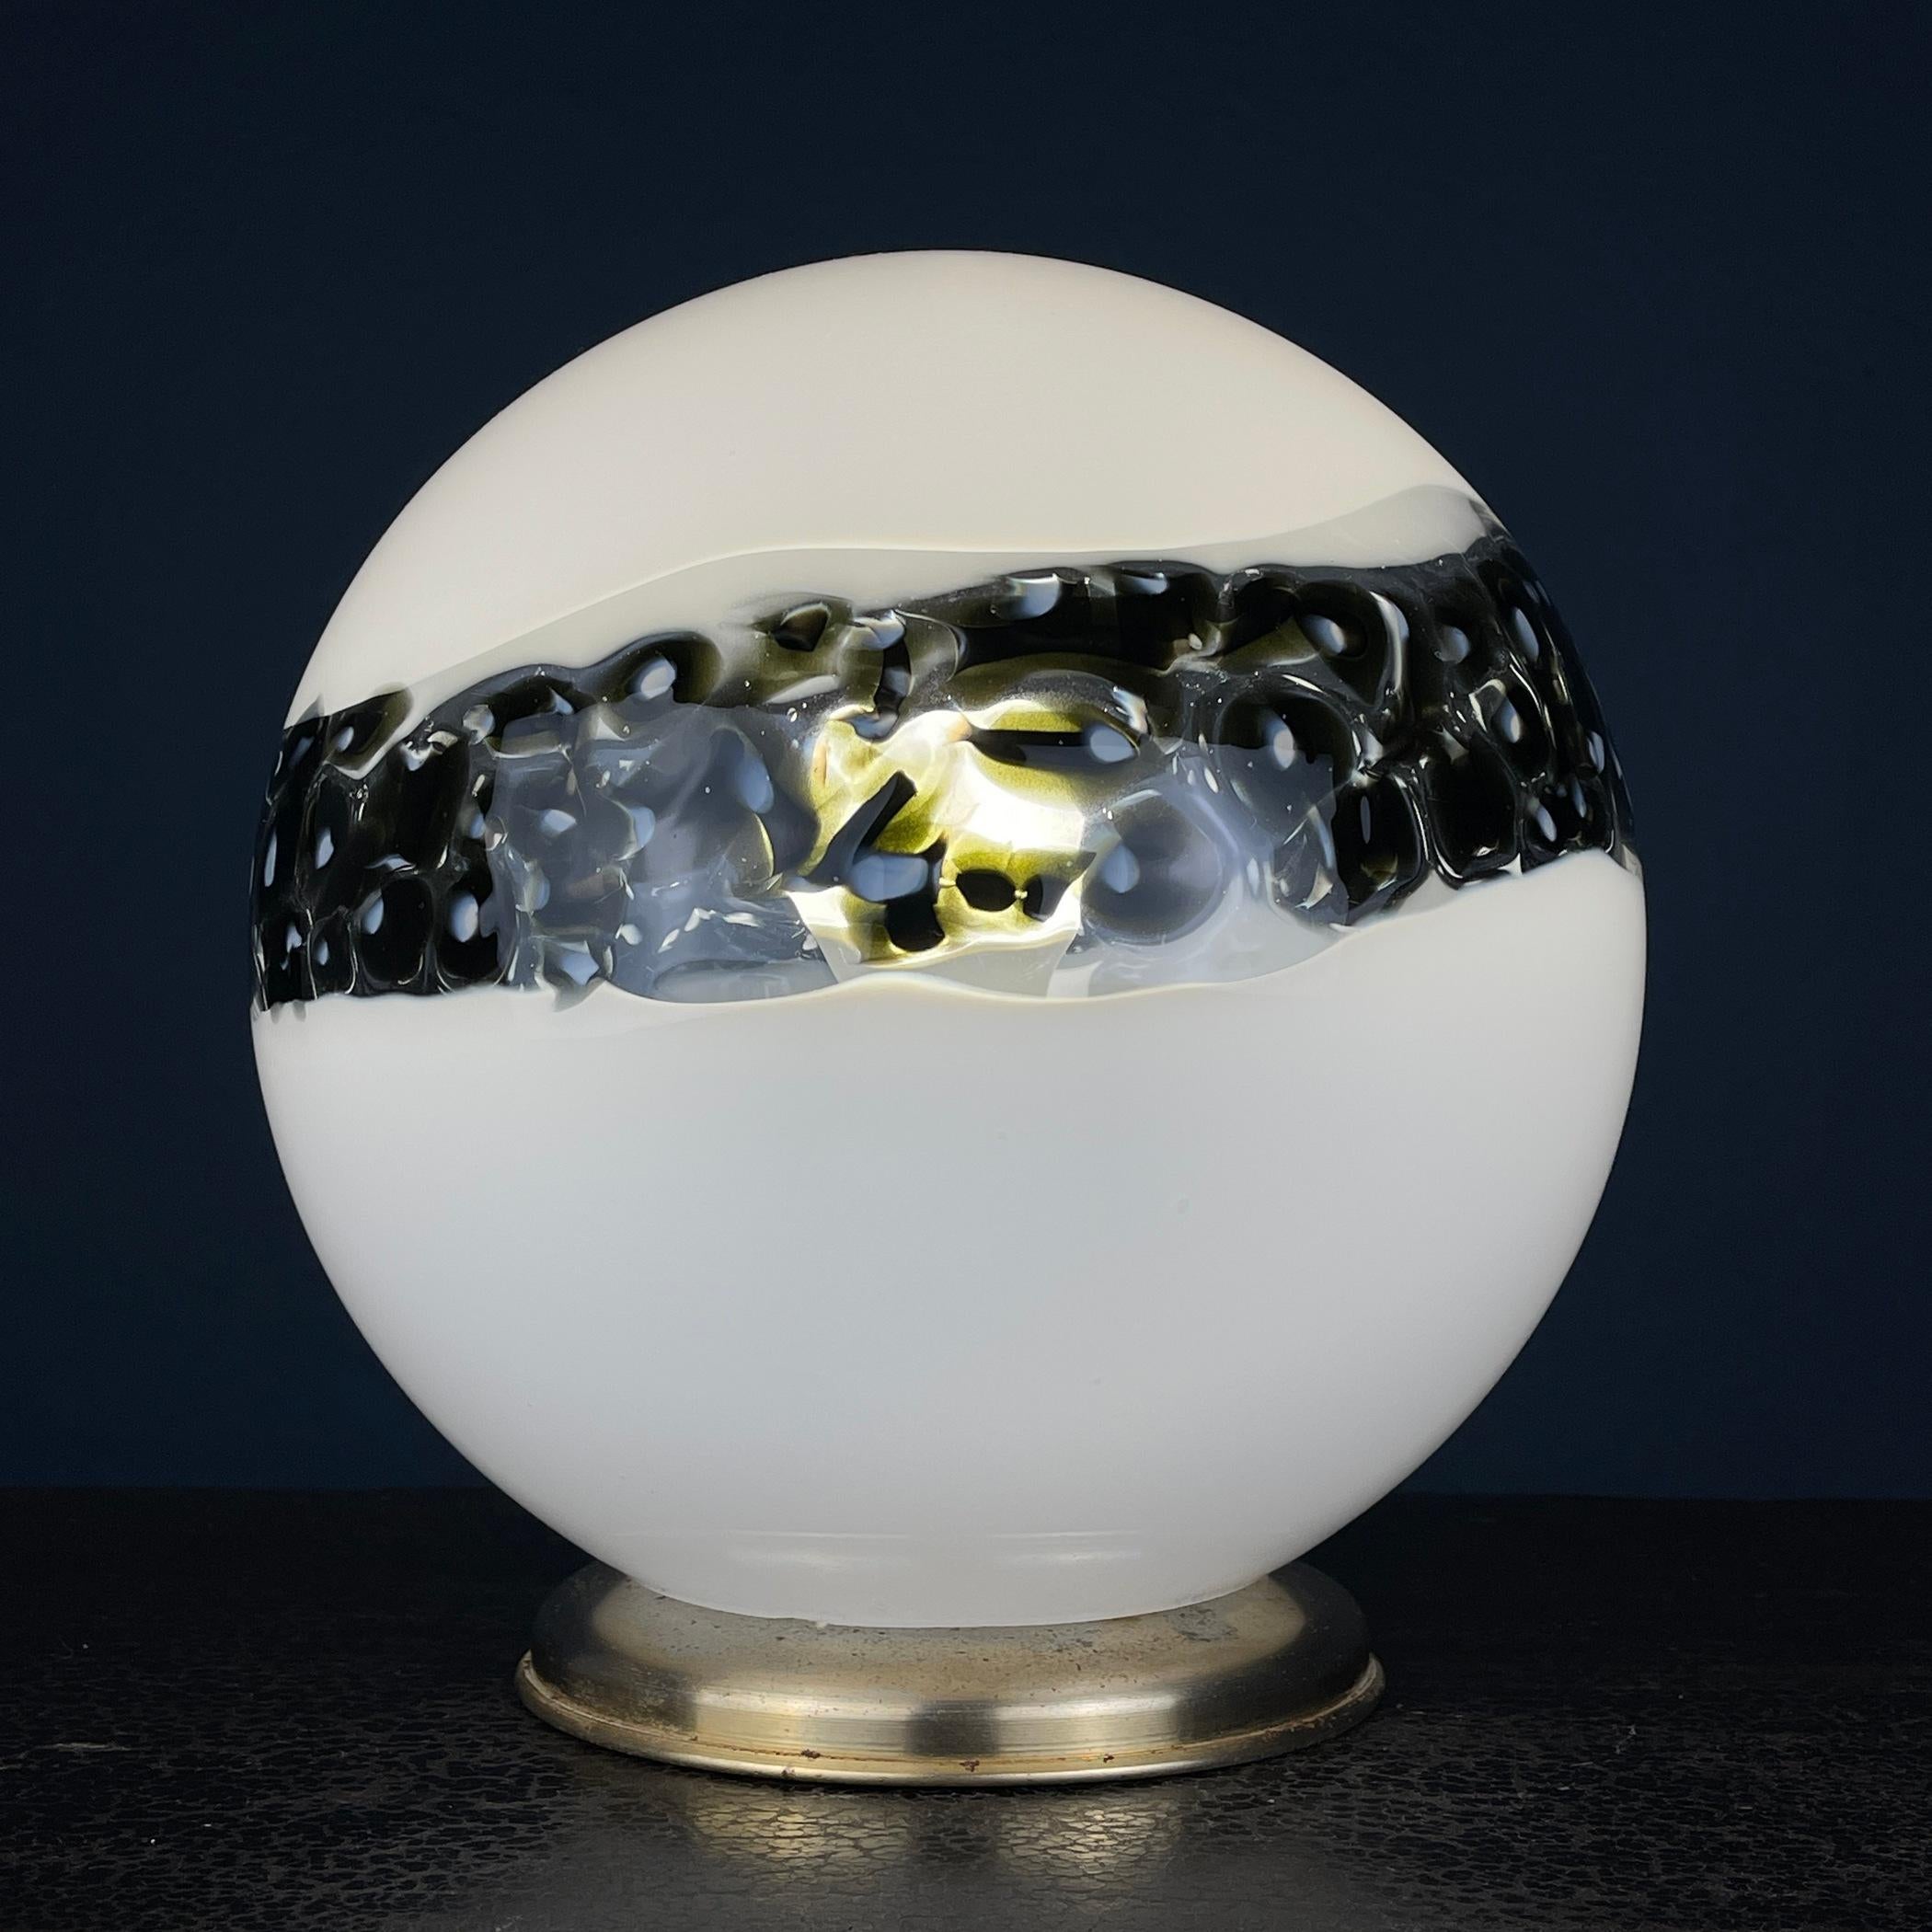 Dies ist eine prächtige Murano-Glas-Tischlampe aus Italien, die in den 1970er Jahren während der Mid-Century Modern-Ära hergestellt wurde. Die Leuchte besticht durch ihr einzigartiges und elegantes Design mit einem kugelförmigen Schirm aus weißem